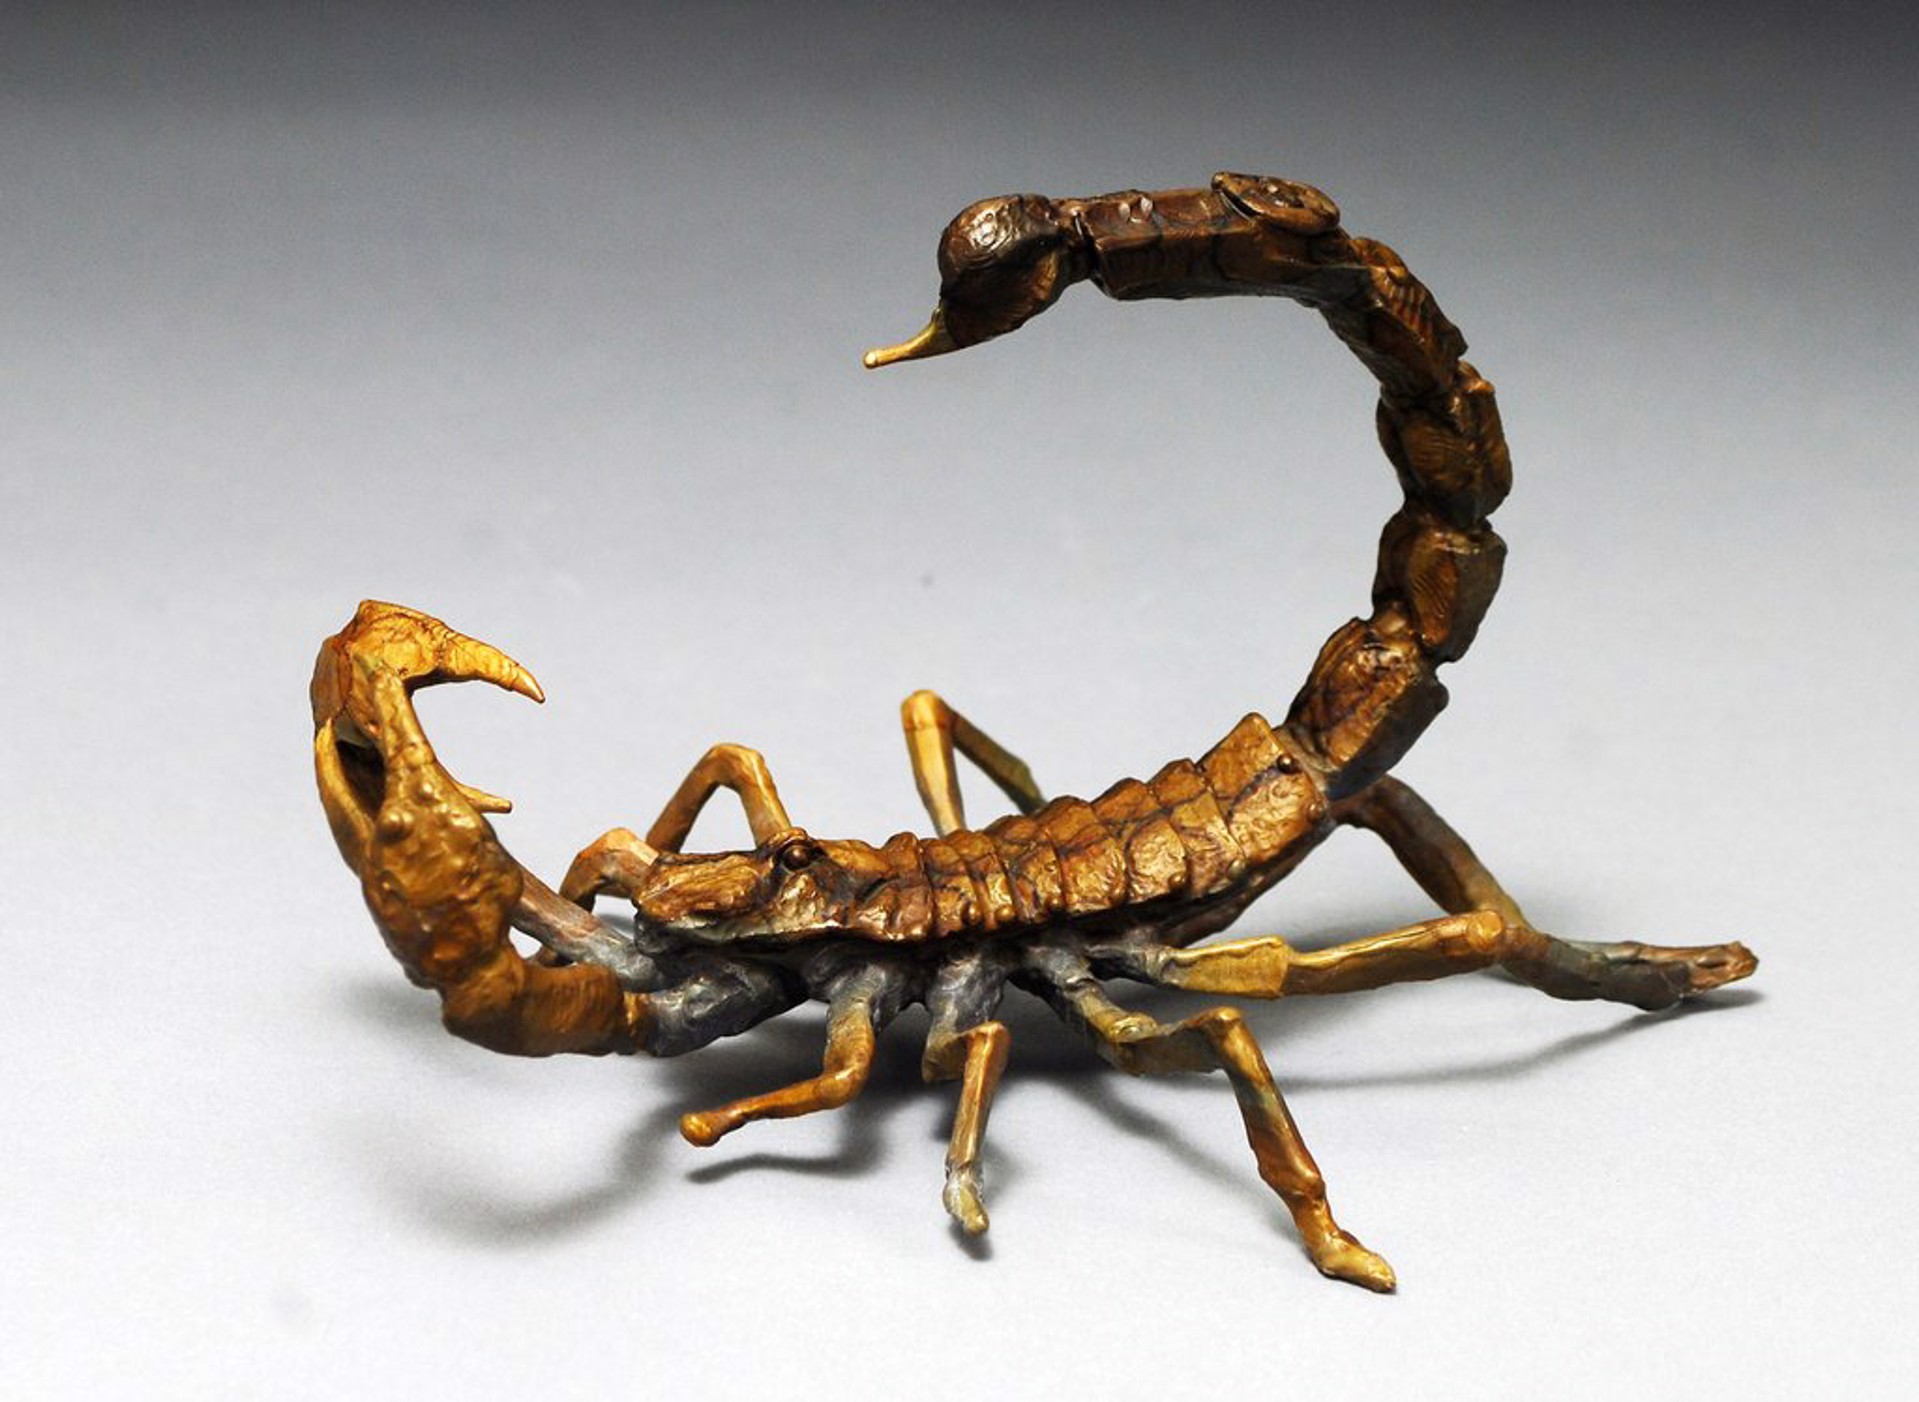 Scorpion by Dan Chen